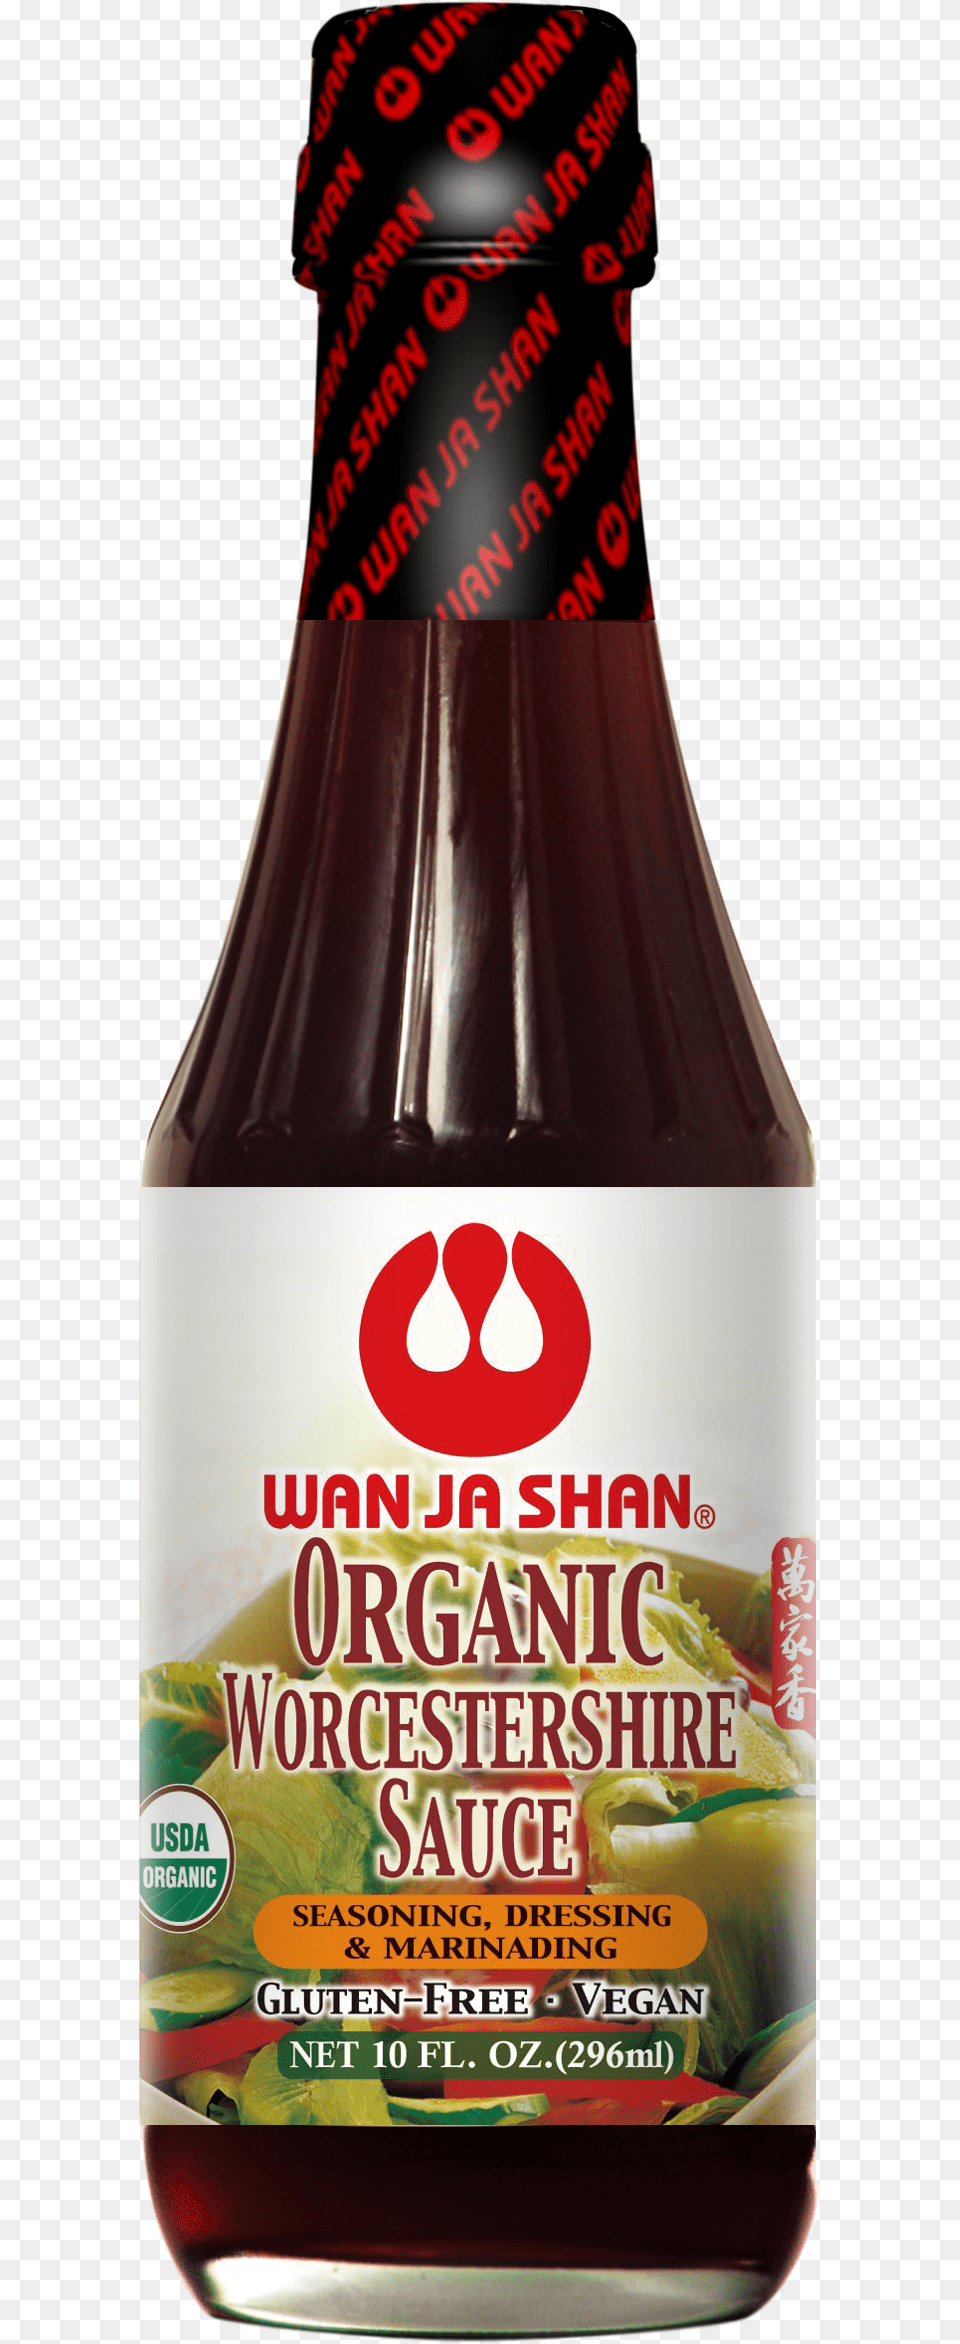 Wanjashan Organic Worcestershire Sauce Worcestershire Sauce, Food, Ketchup Free Transparent Png